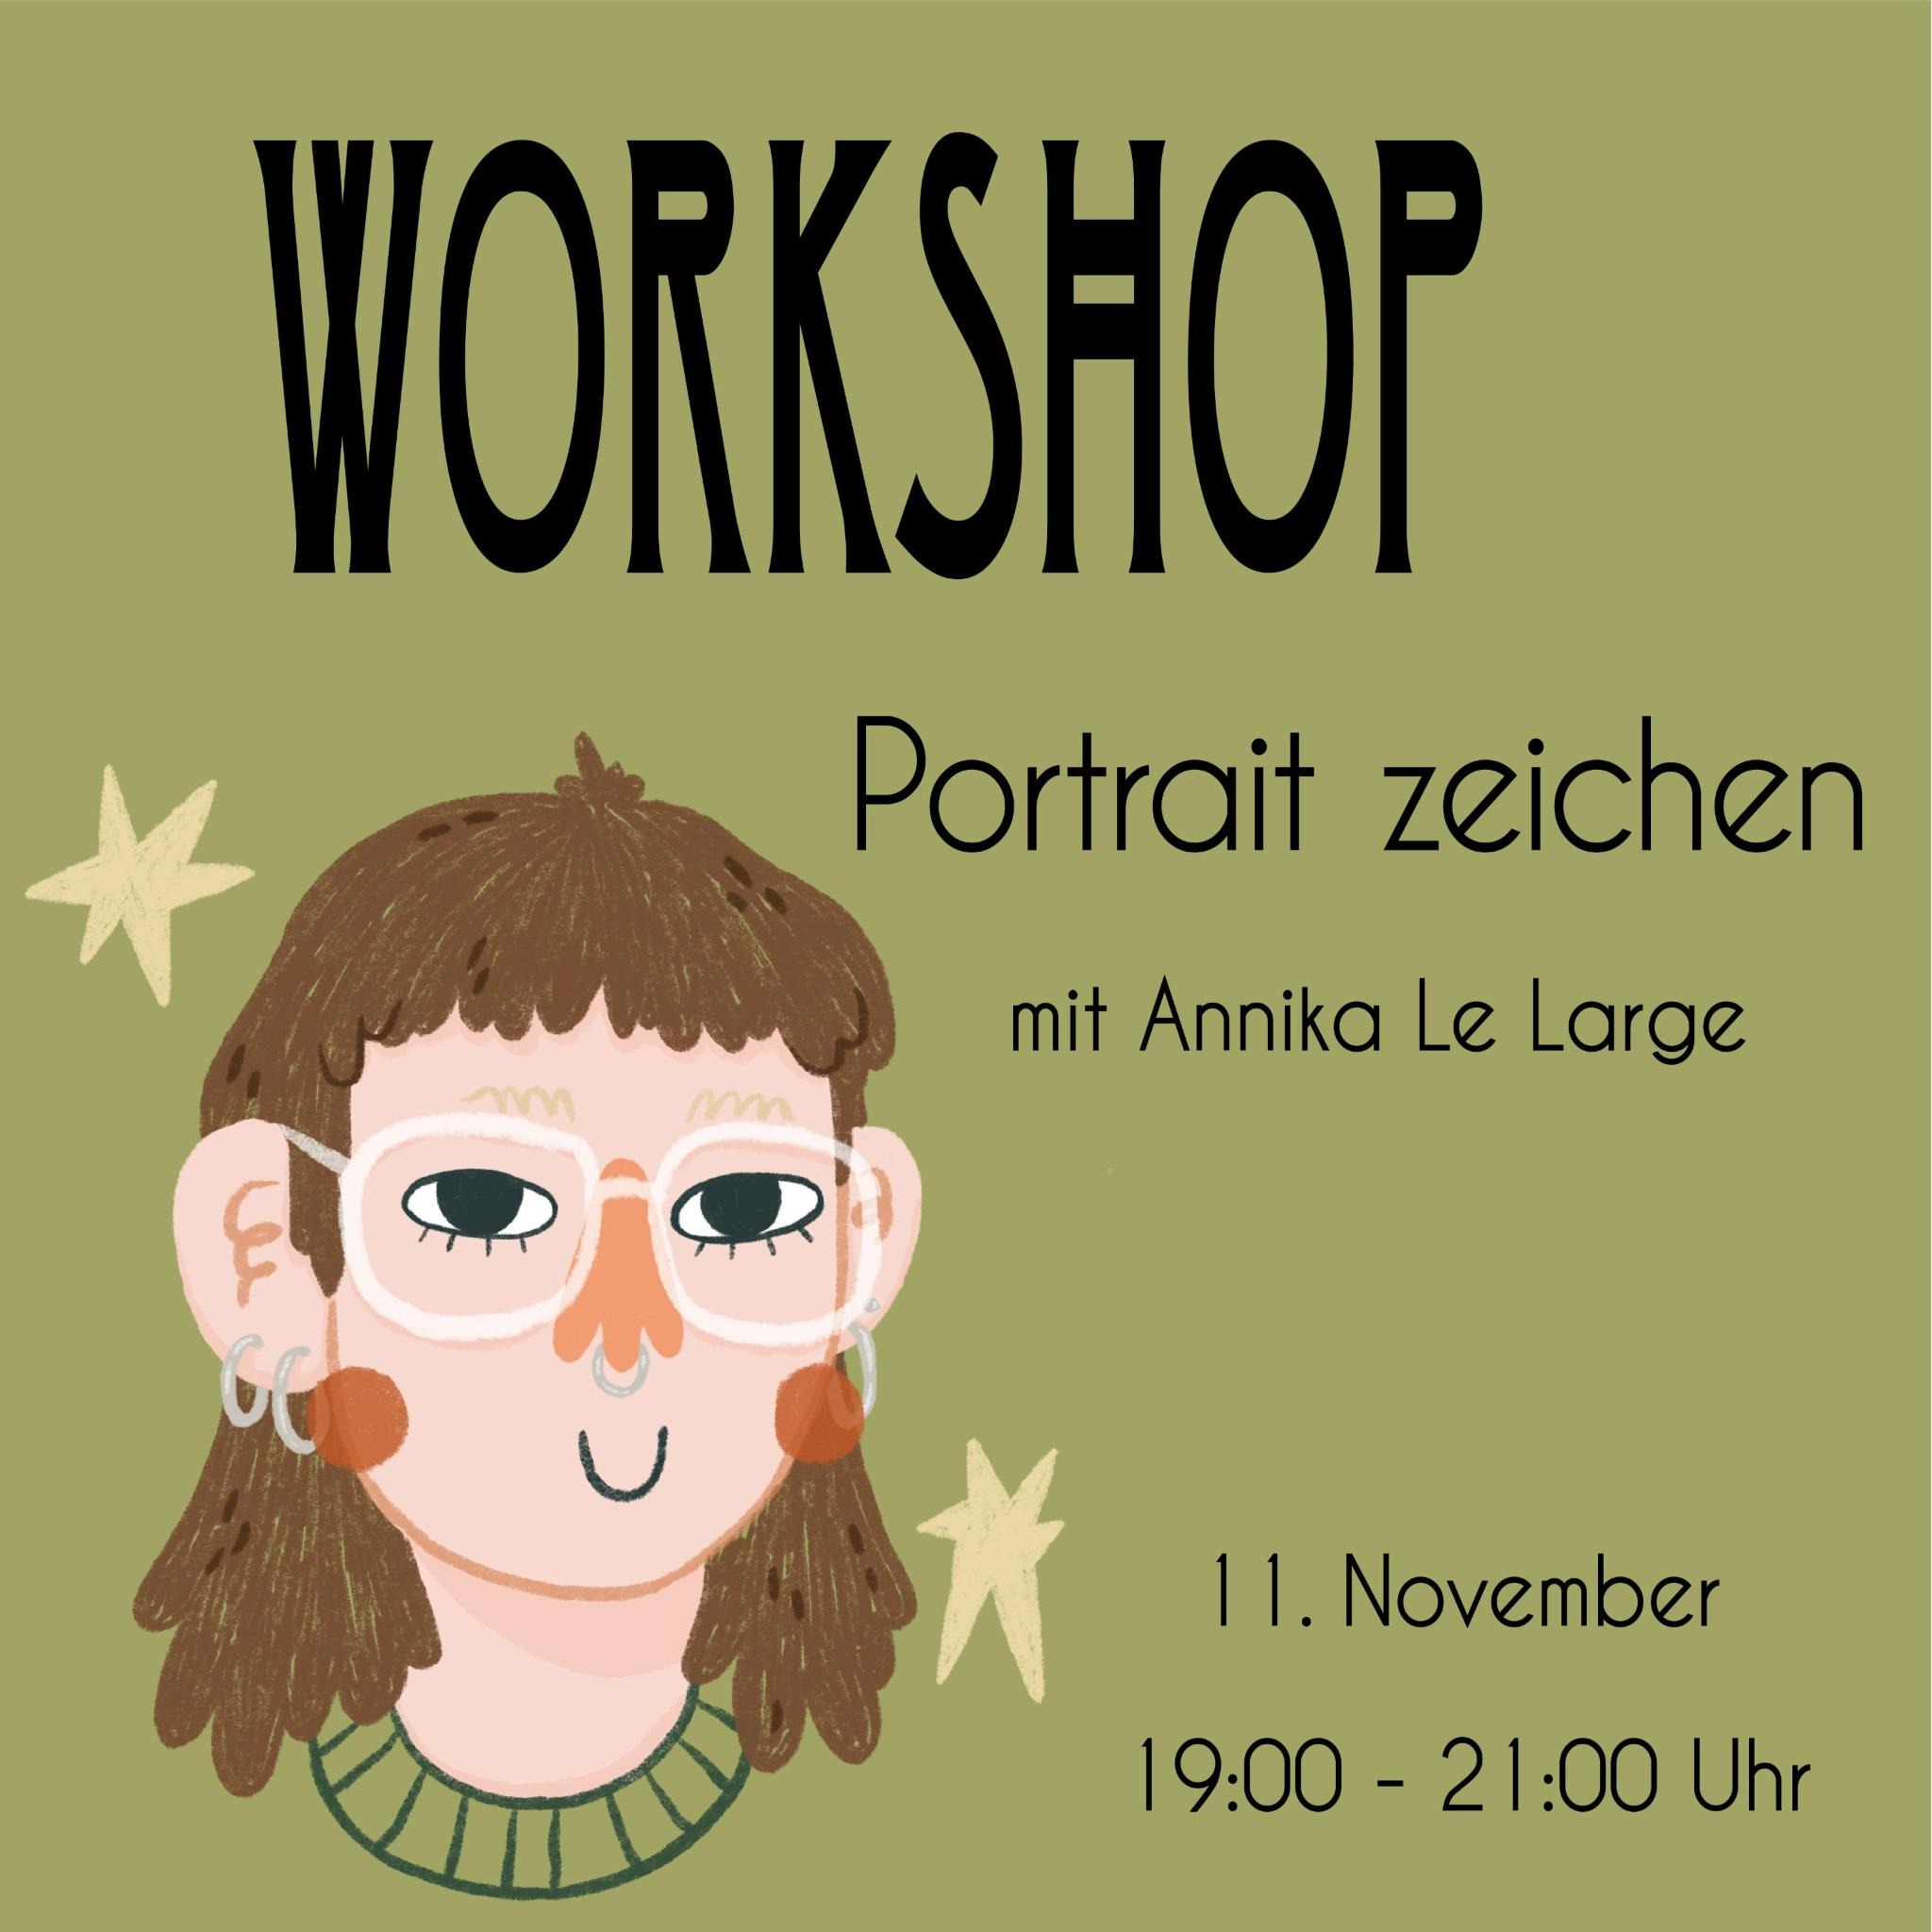 Workshop „Porträt zeichnen“ mit Annika Le Large